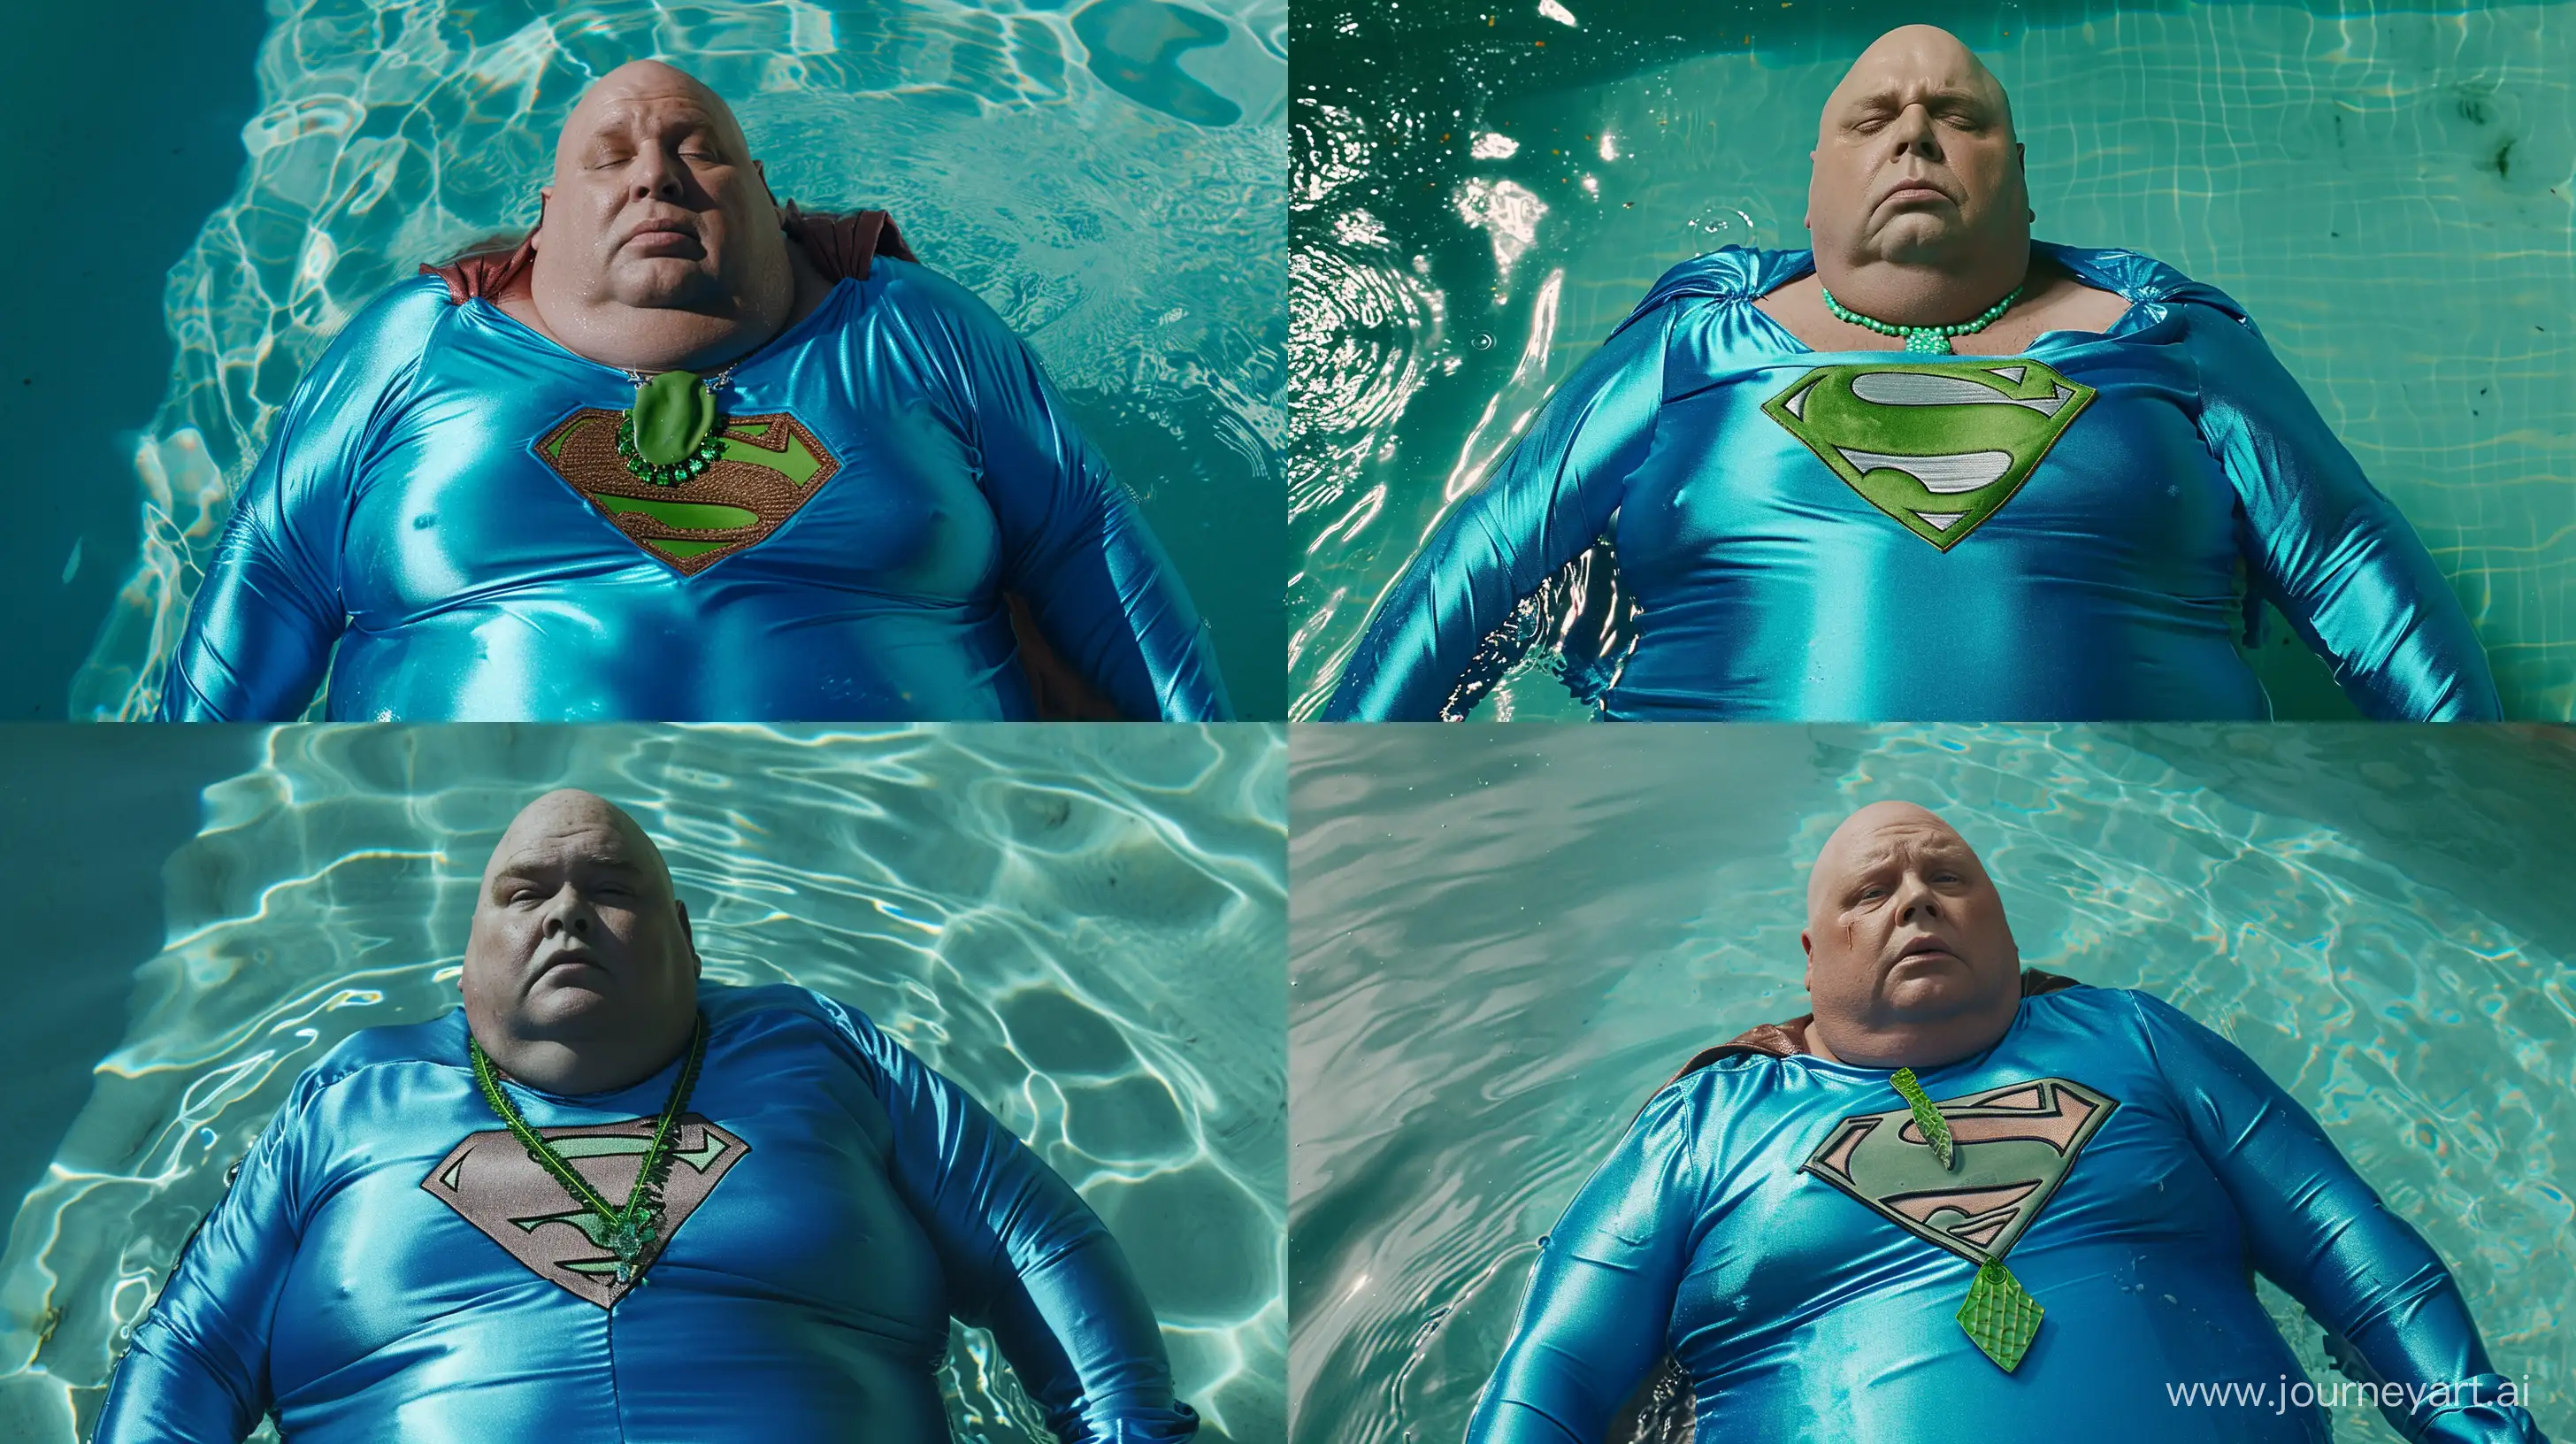 Elderly-Superman-Rests-in-Serene-Pool